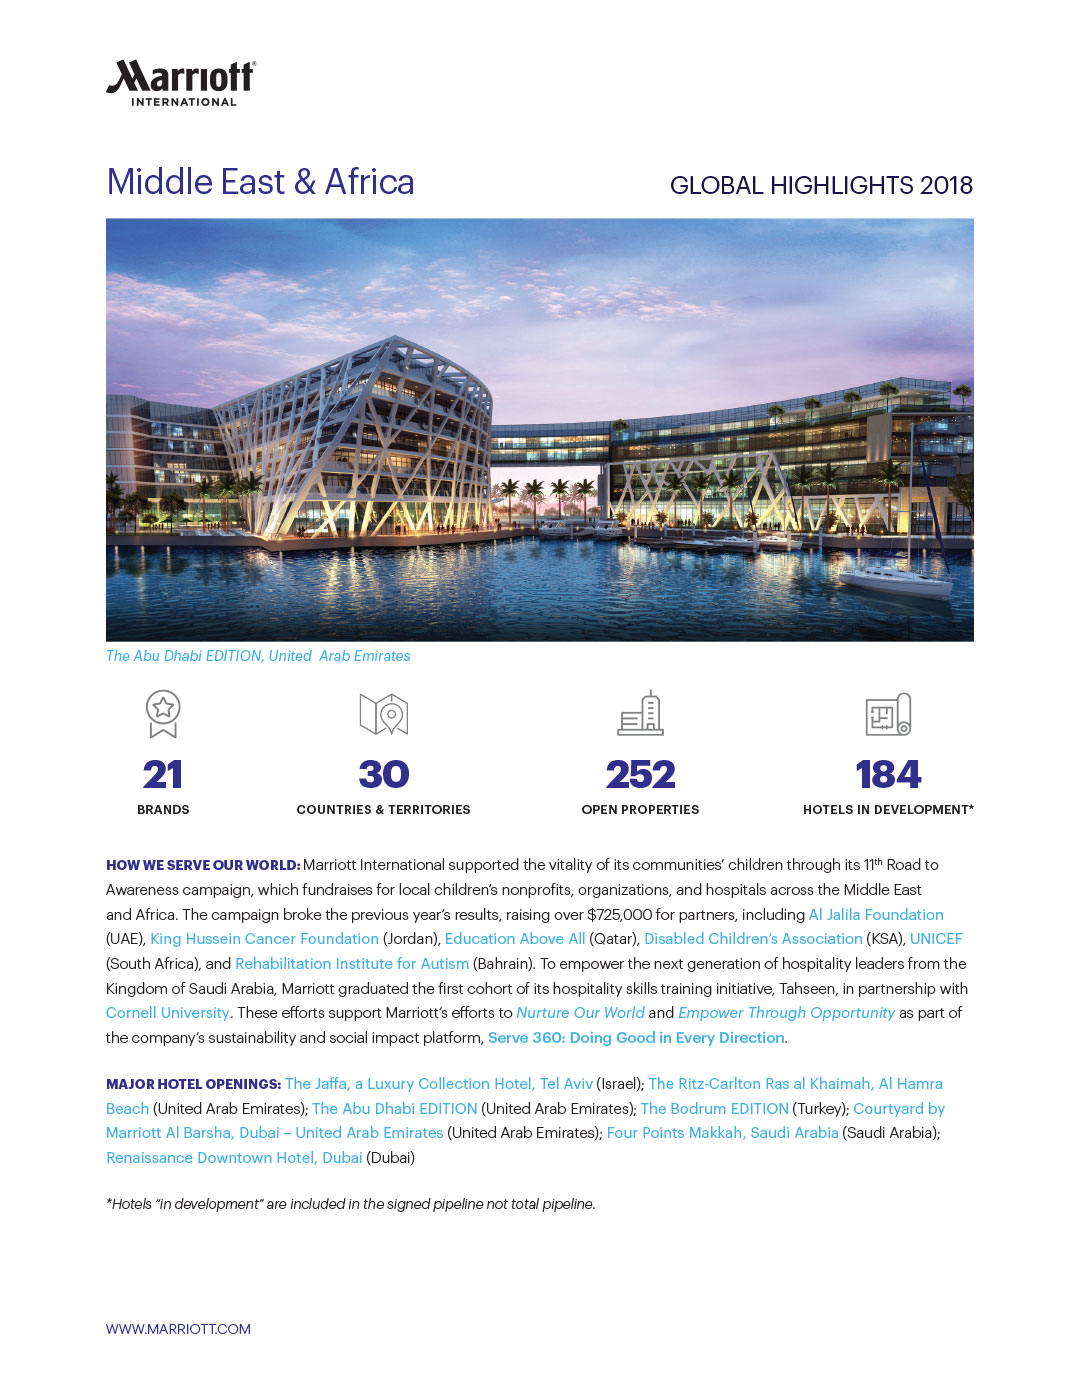 Marriott International, Middle East & Africa Highlights Fact Sheet